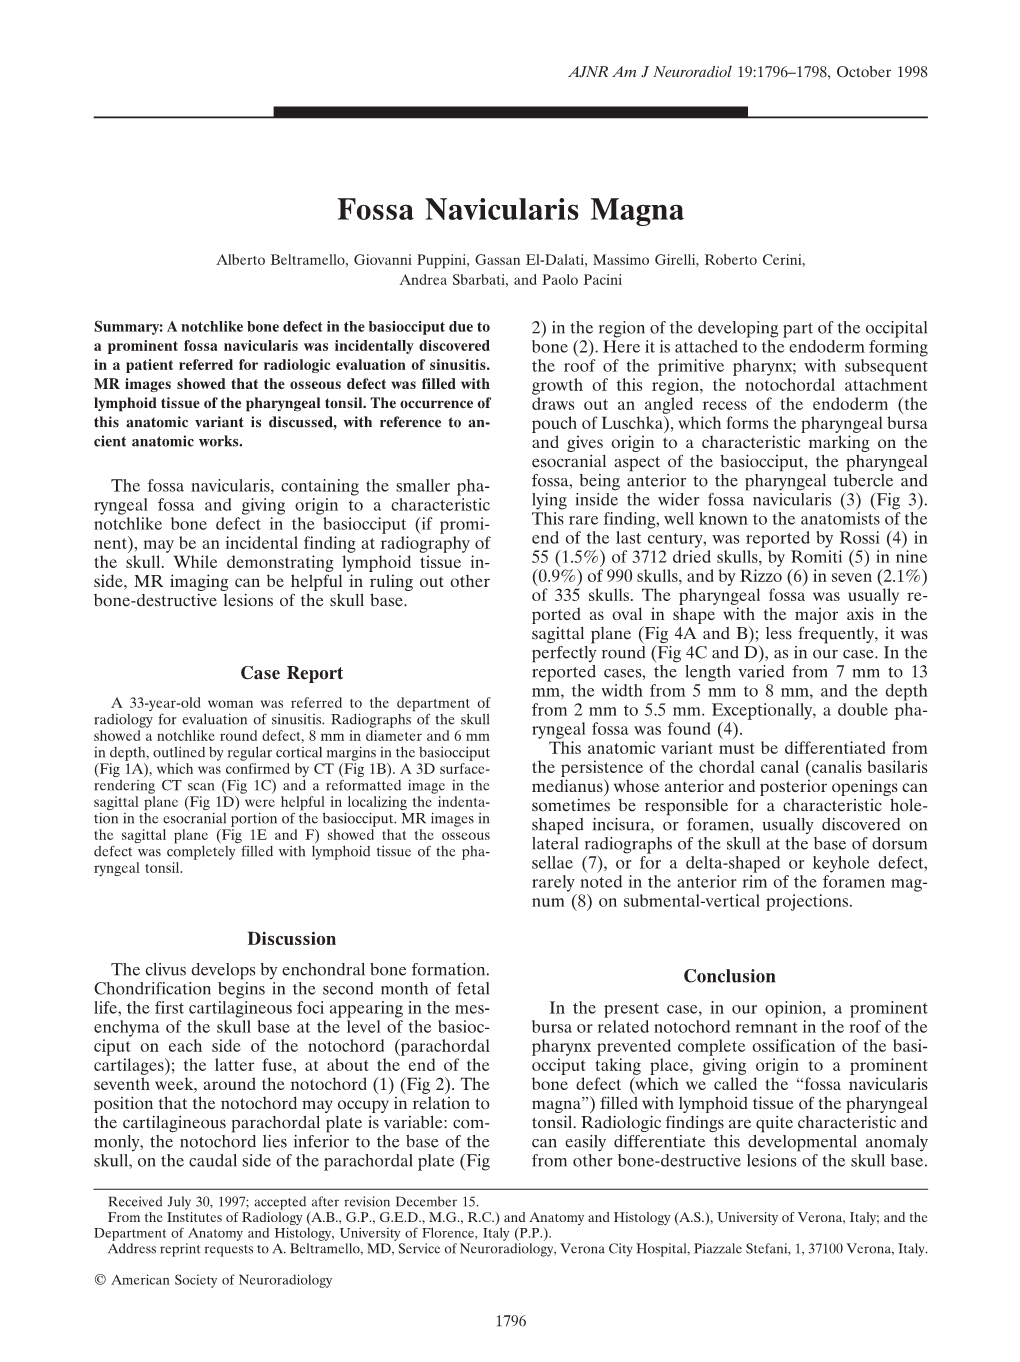 Fossa Navicularis Magna